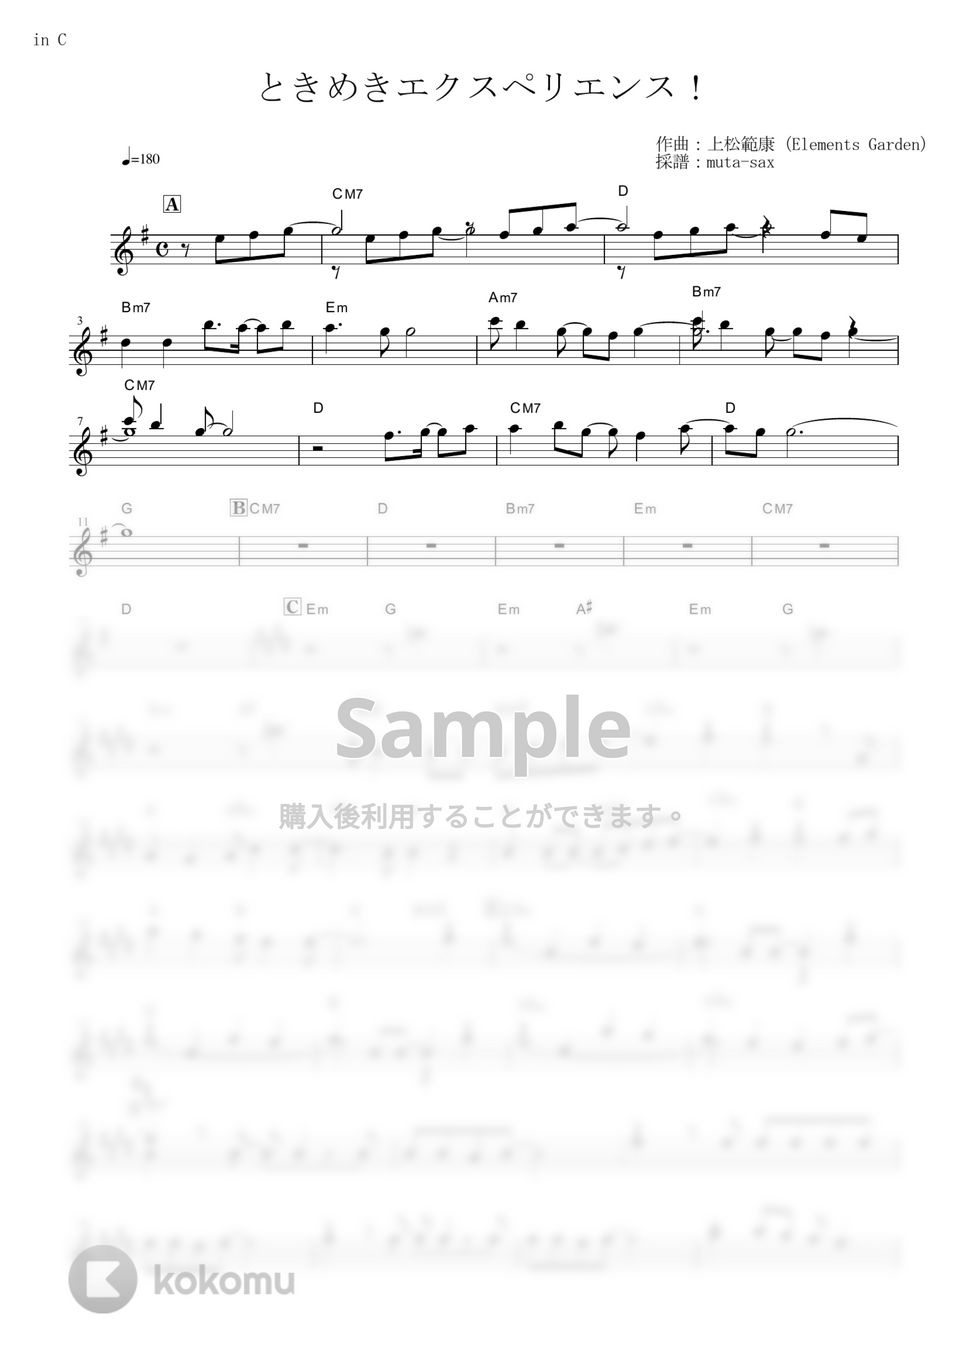 BanG Dream! - ときめきエクスペリエンス!【in C】 by muta-sax